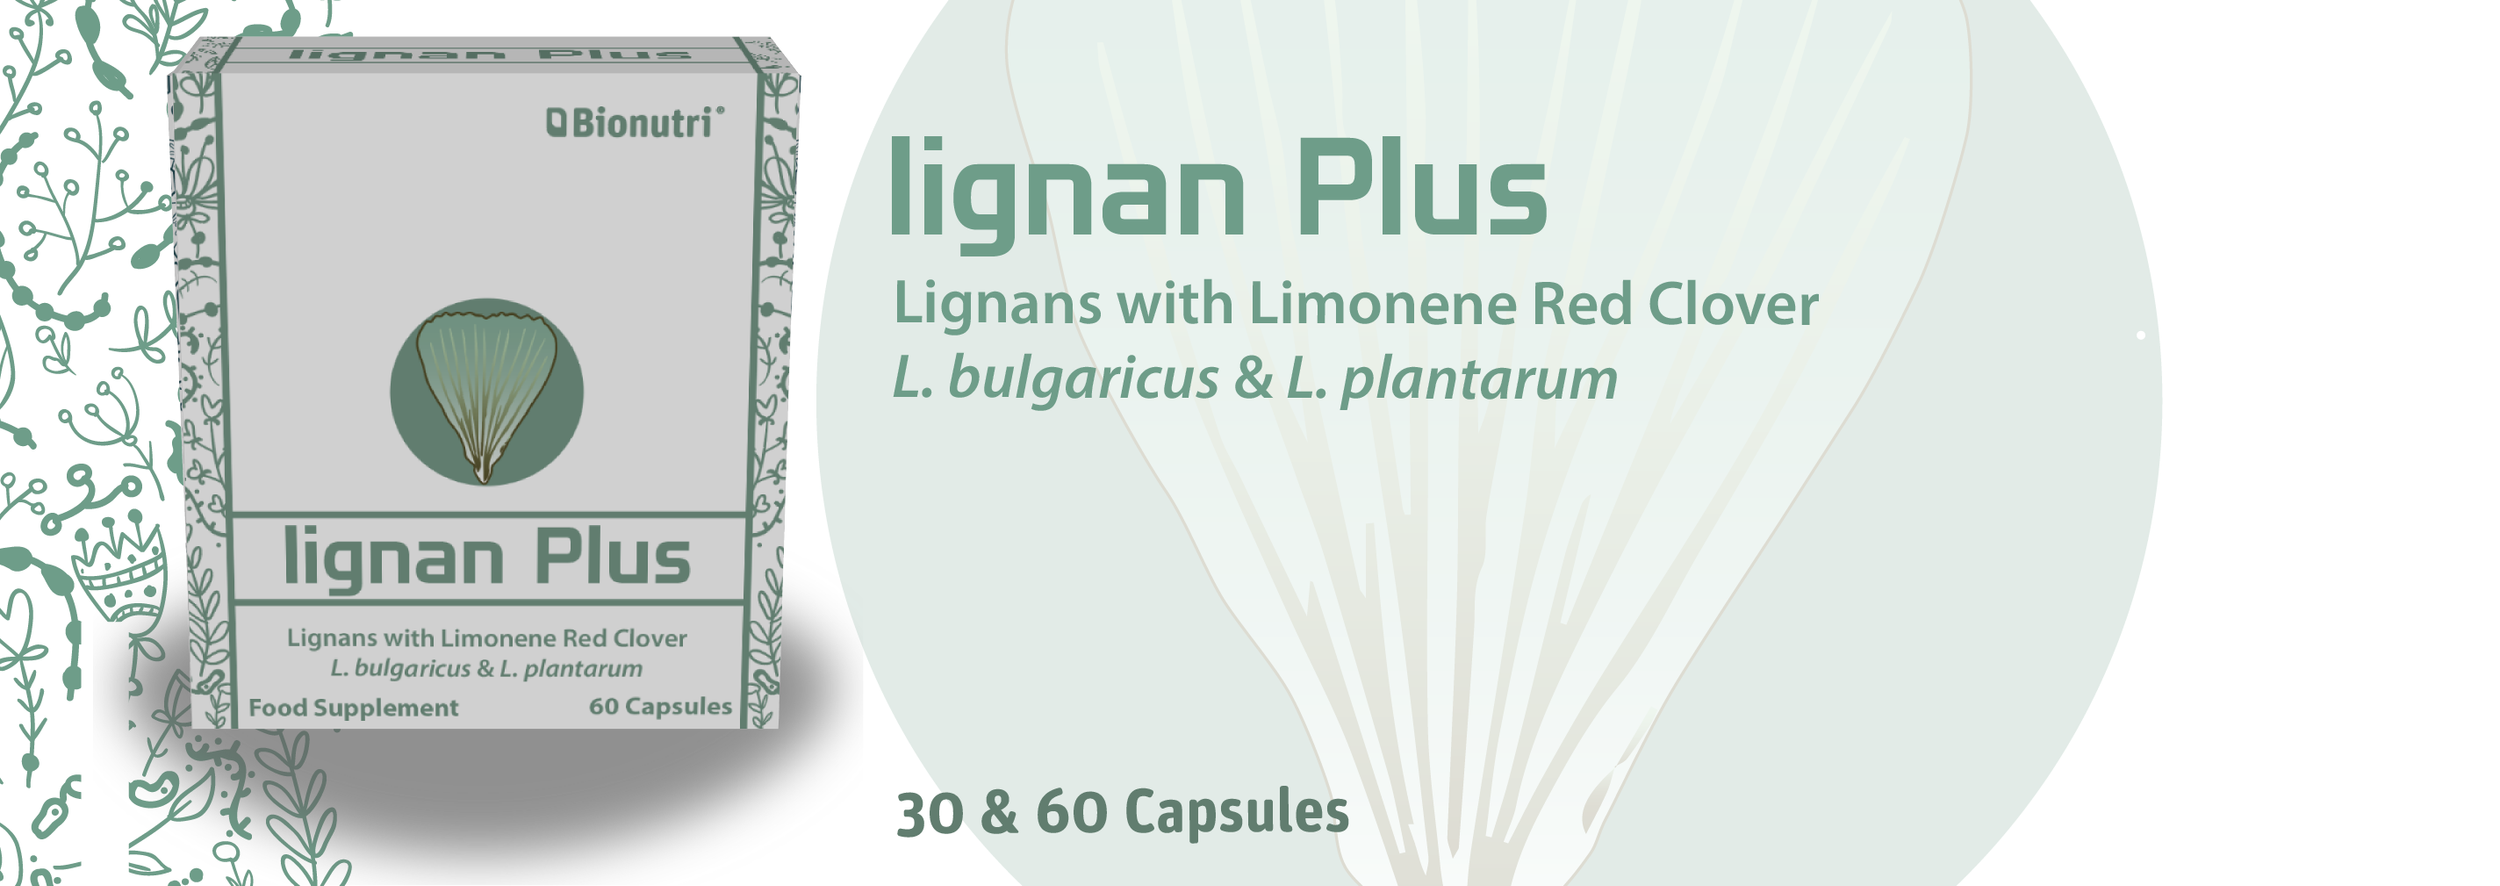 Lignan Plus 23-01-01-01.png